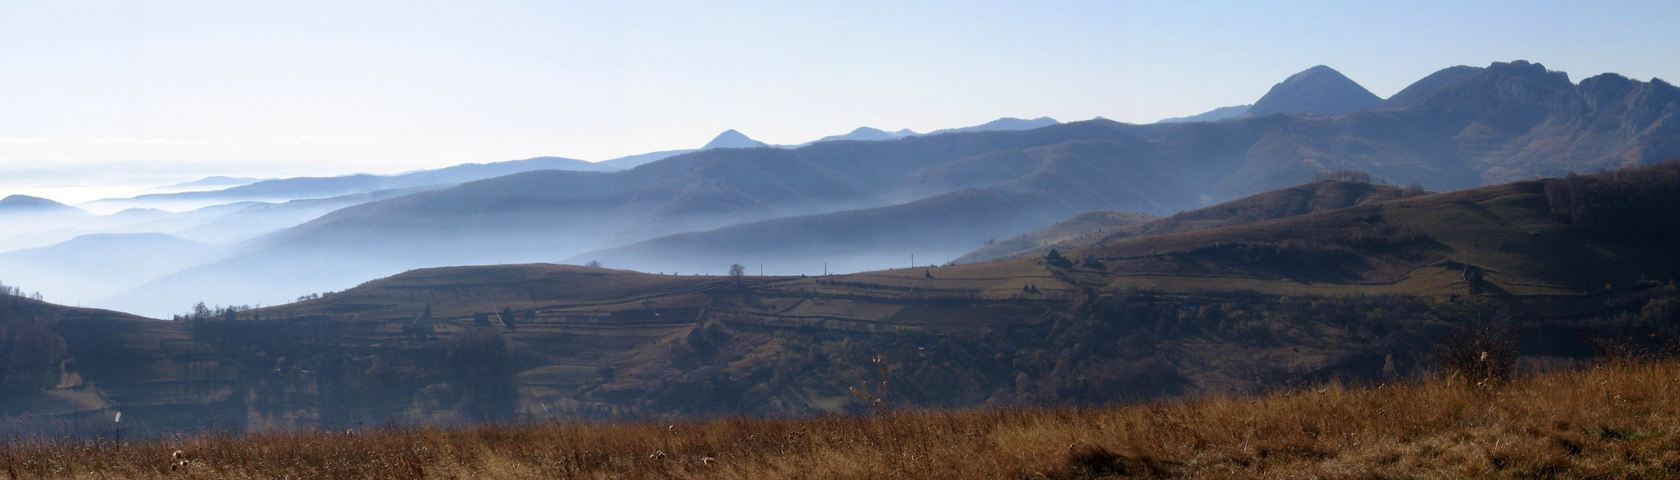 Apuseni Mountains